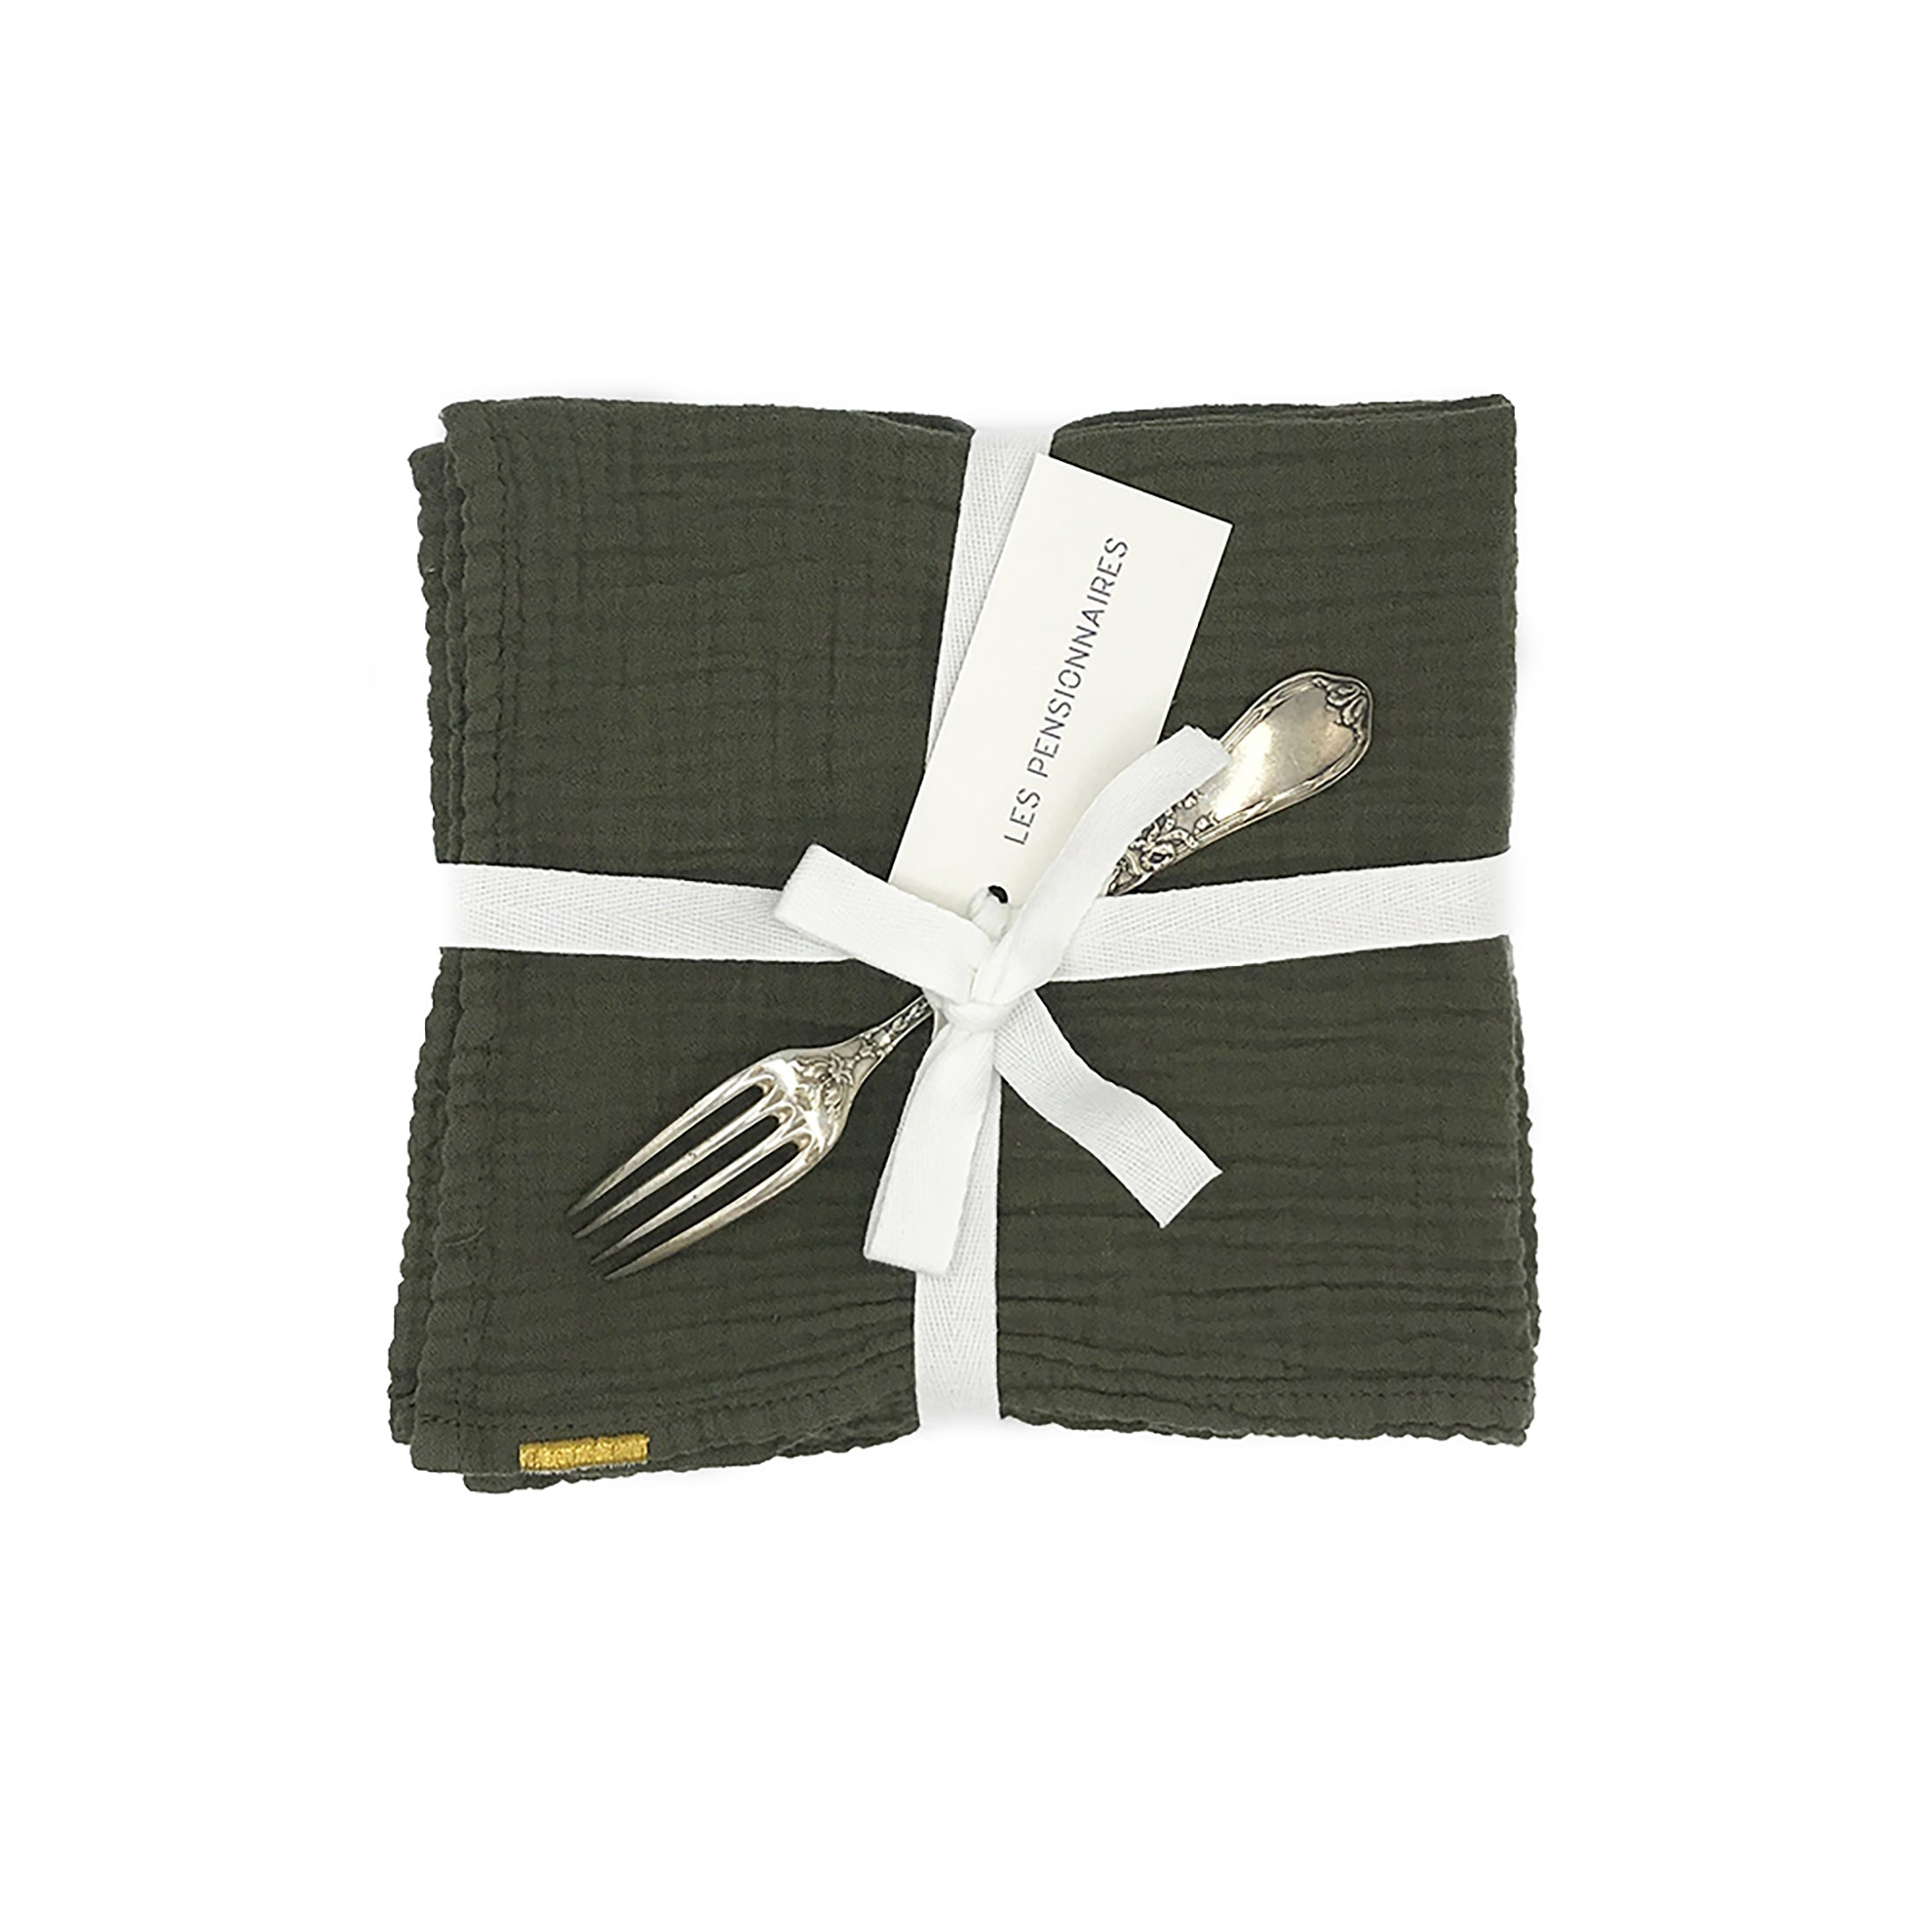 Herring & Bones - Concept Store Joyeux - Les Pensionnaires - Serviettes de table - Lot de 2 serviettes de table en double gaze de coton